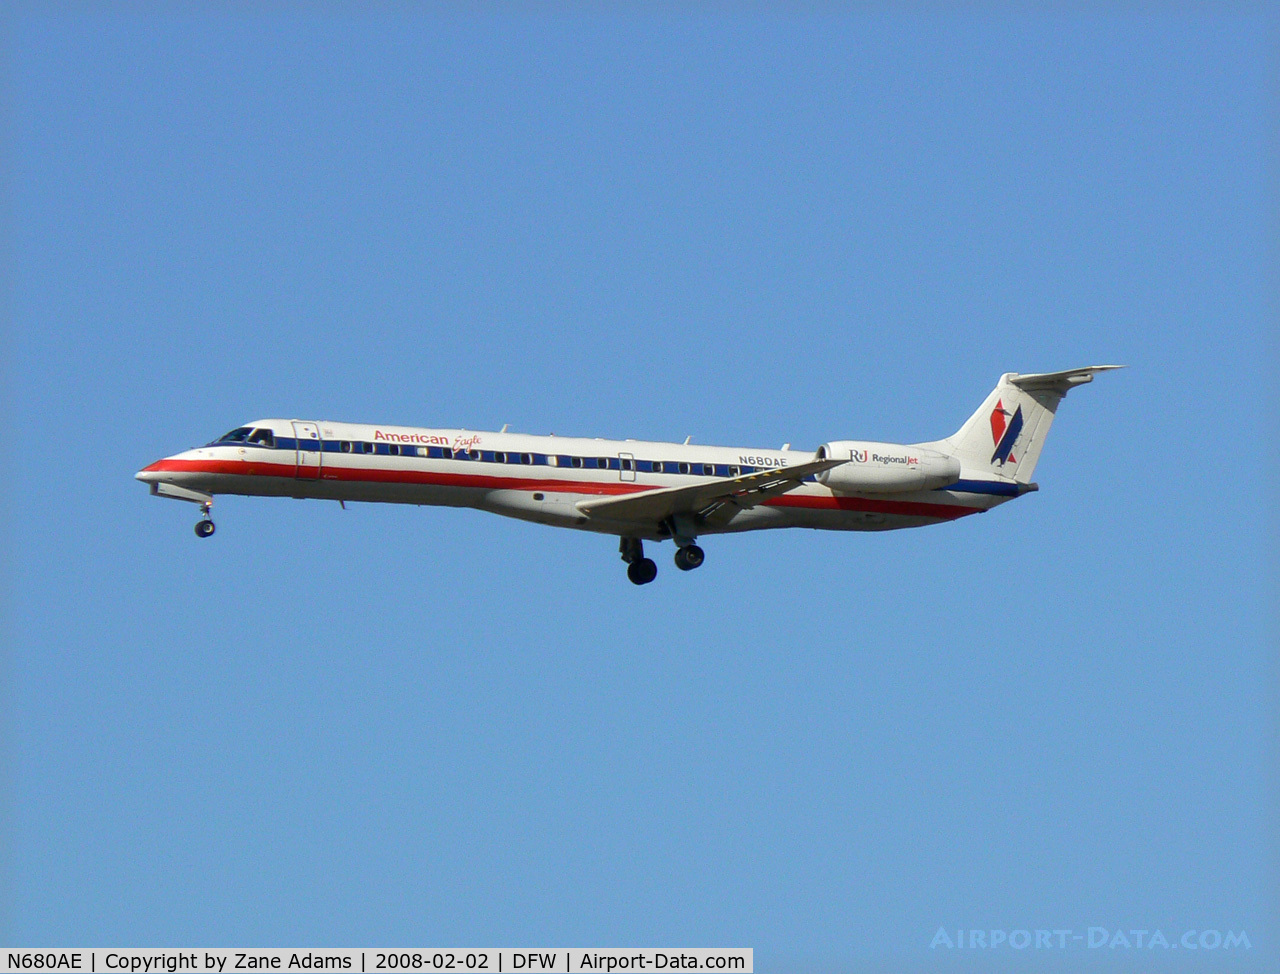 N680AE, 2004 Embraer ERJ-145LR (EMB-145LR) C/N 14500820, American Eagle at DFW